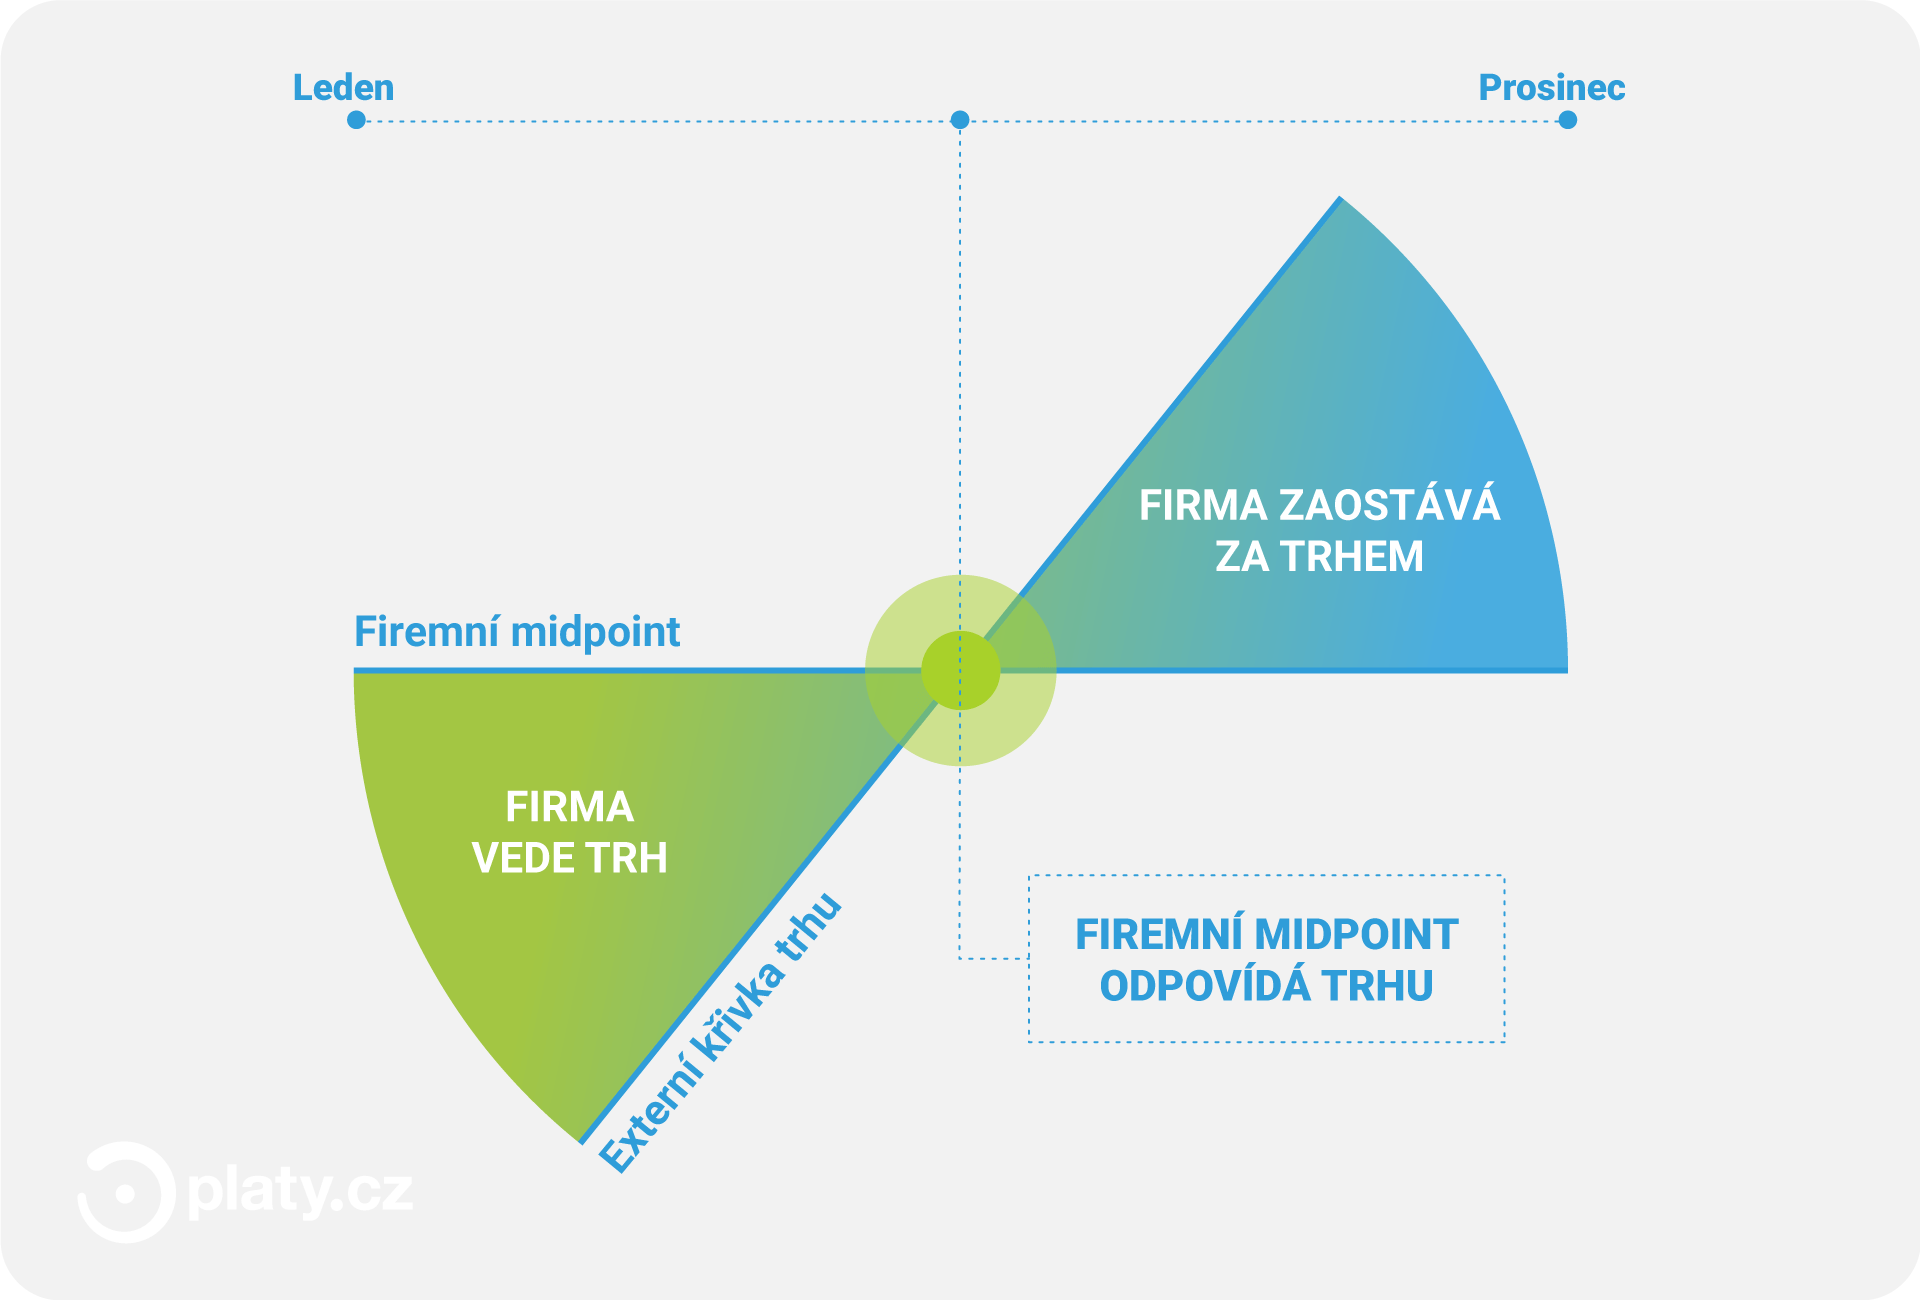 Platy.cz - Mzdy odpovídajú trhu